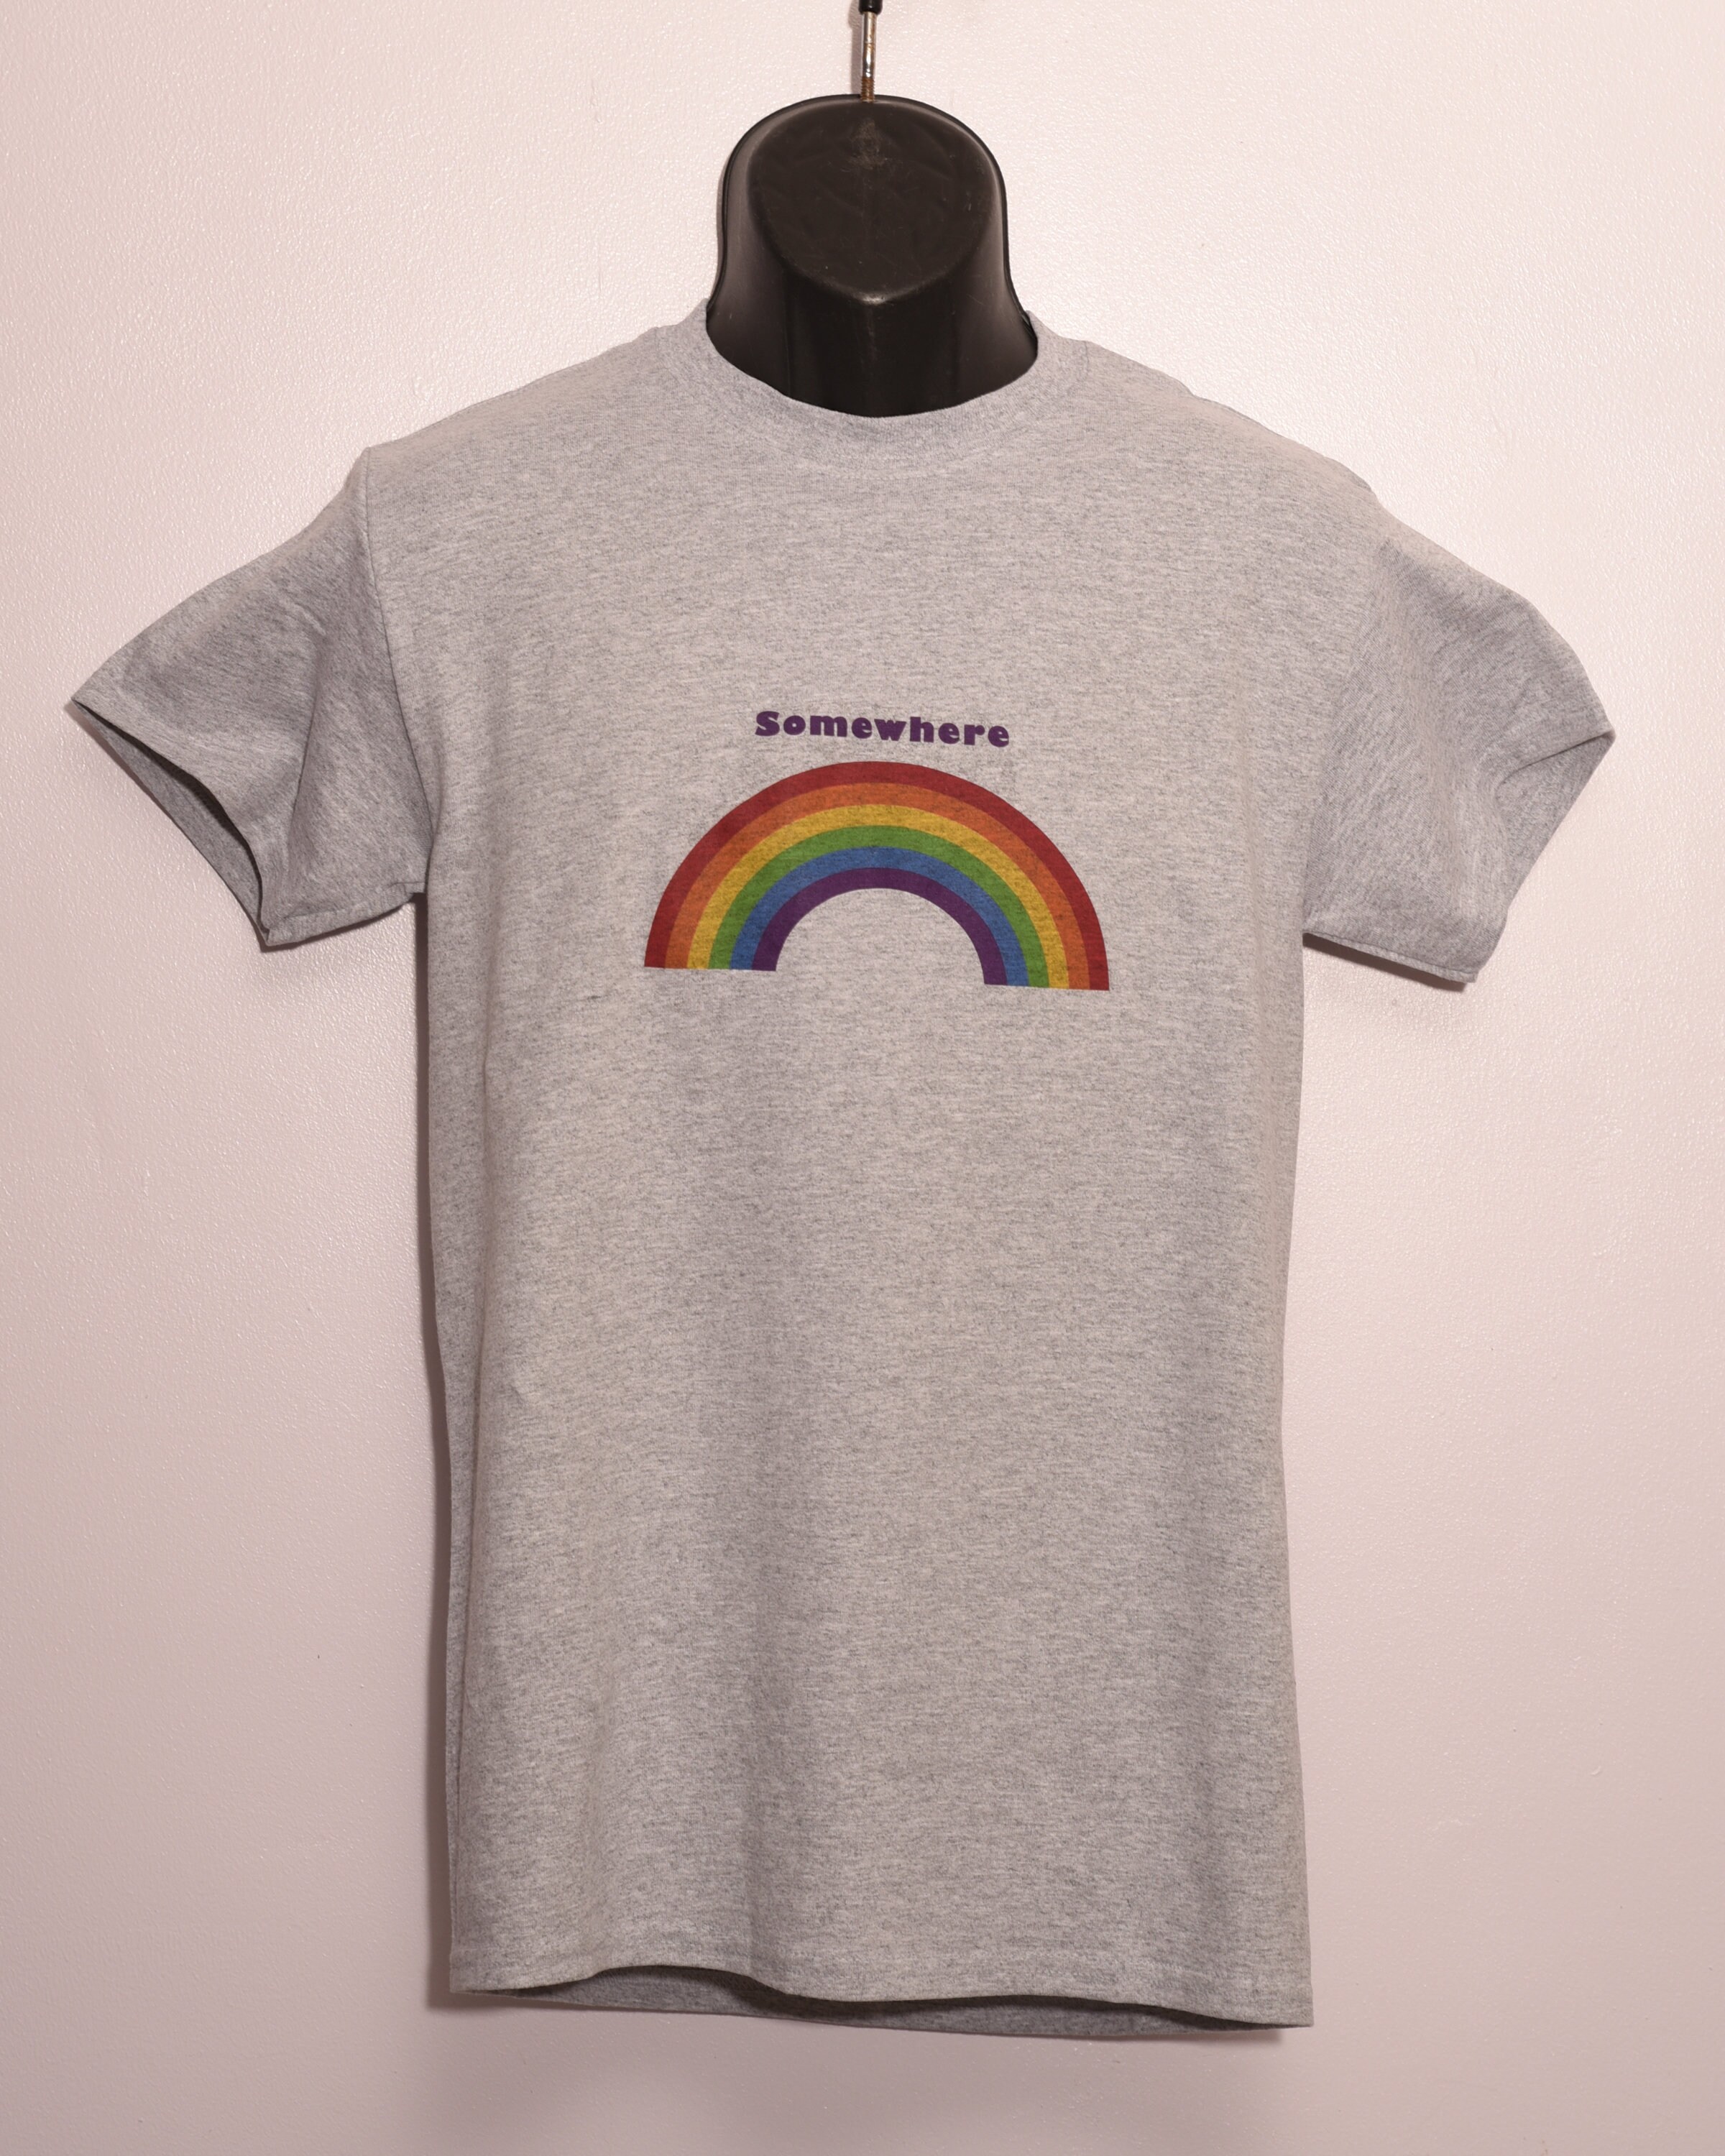 Somewhere Over the Rainbow T-shirt - Etsy UK